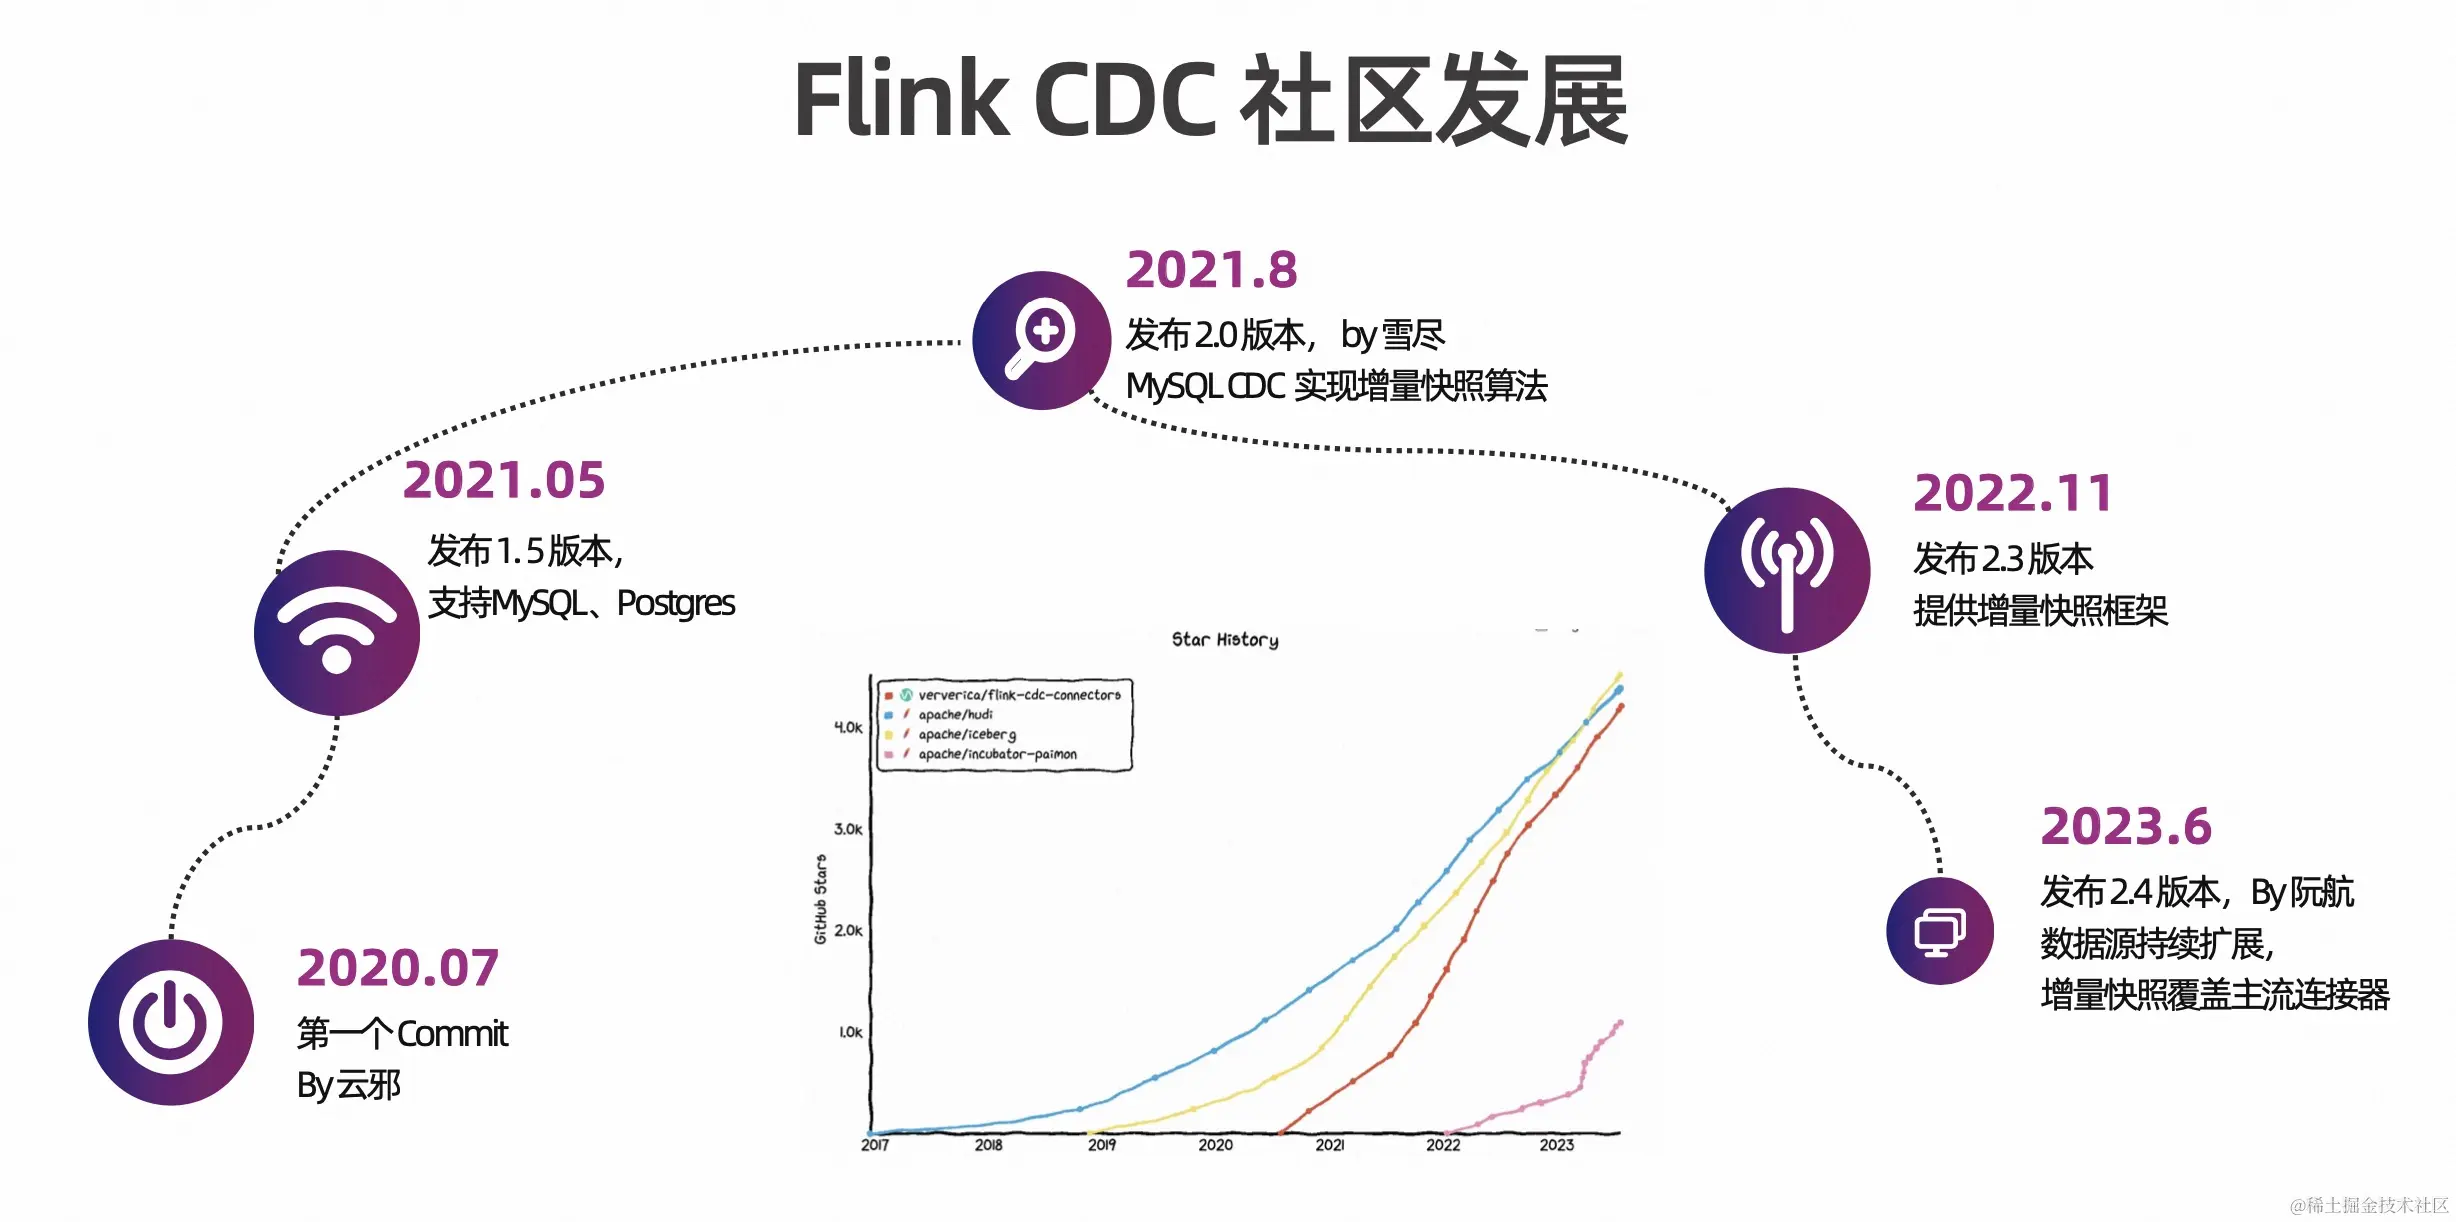 基于 Flink CDC 高效构建入湖通道_Flink_03